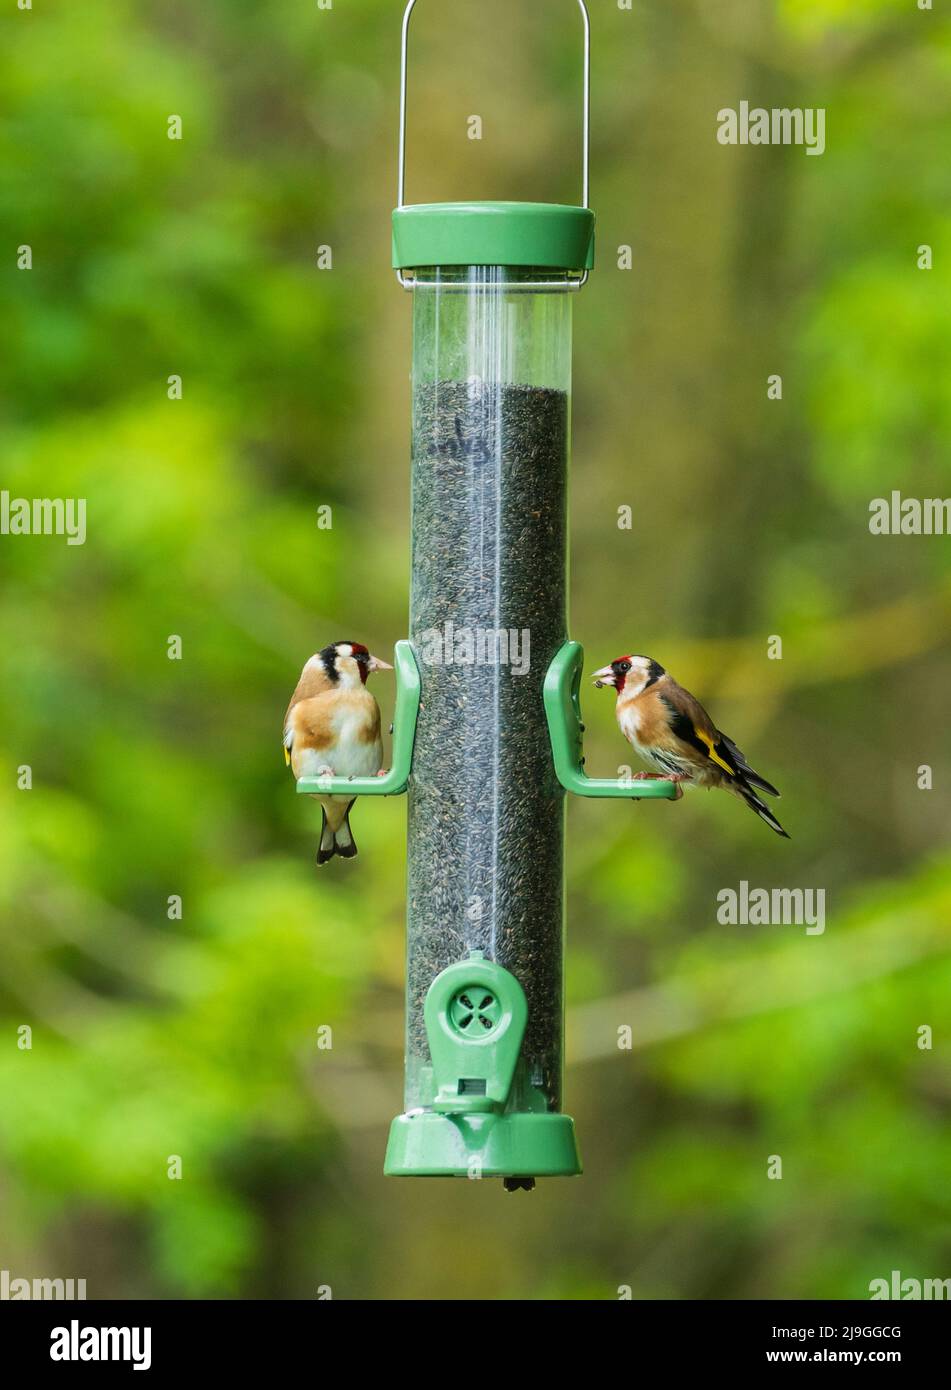 Coppia di carduelis carduelis, cardfinches europei, che si nutrono di semi di girasole su un alimentatore di uccelli Foto Stock